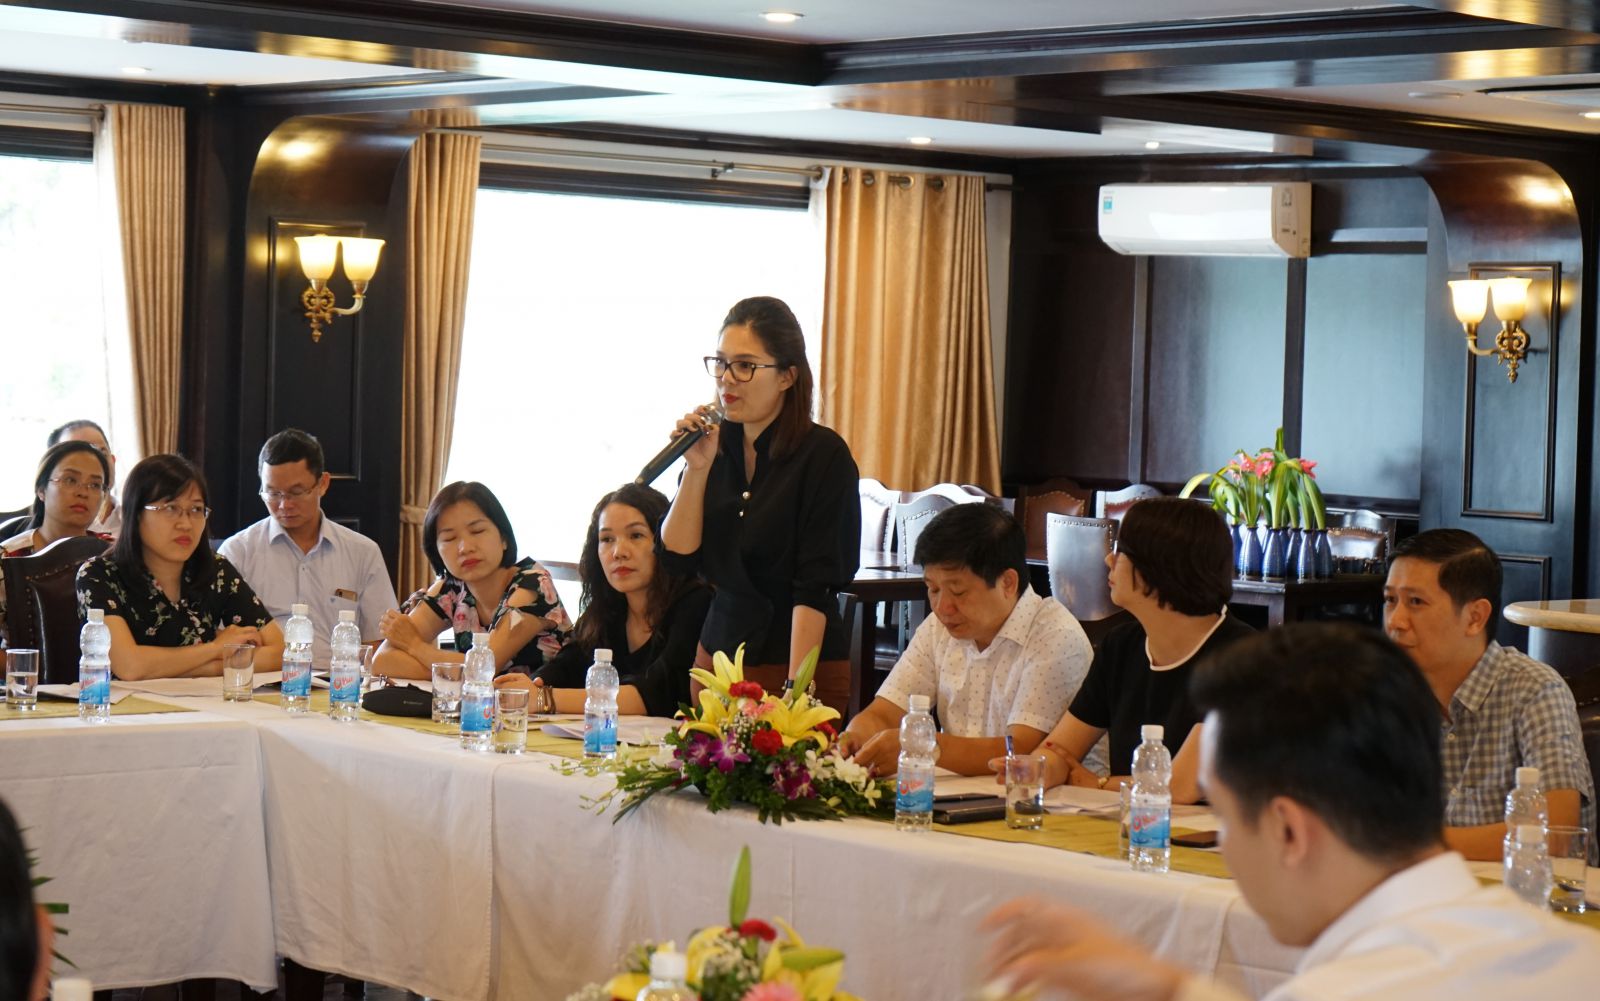 Hanoitourist tổ chức Hội nghị sơ kết 6 tháng đầu năm 2020